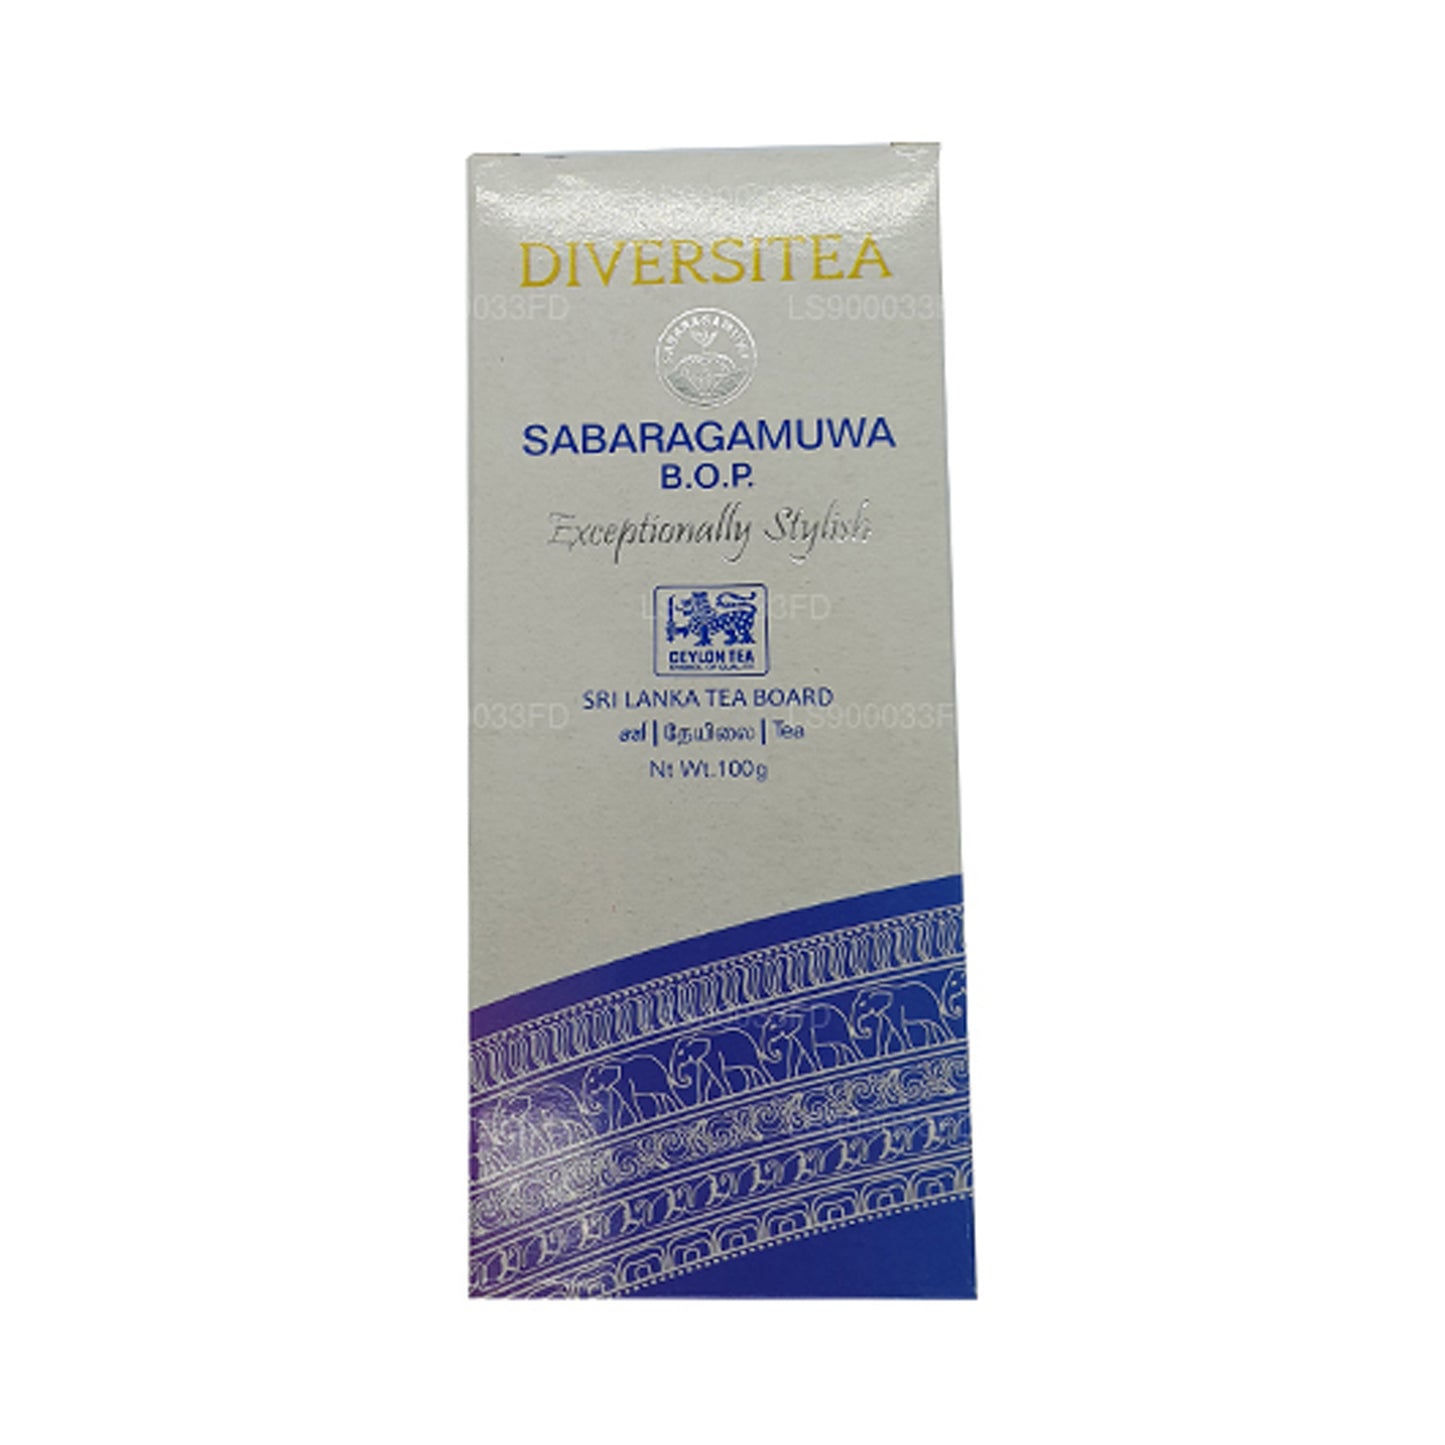 شاي ساباراغاموا الأسود لمنطقة واحدة من لاكبورا